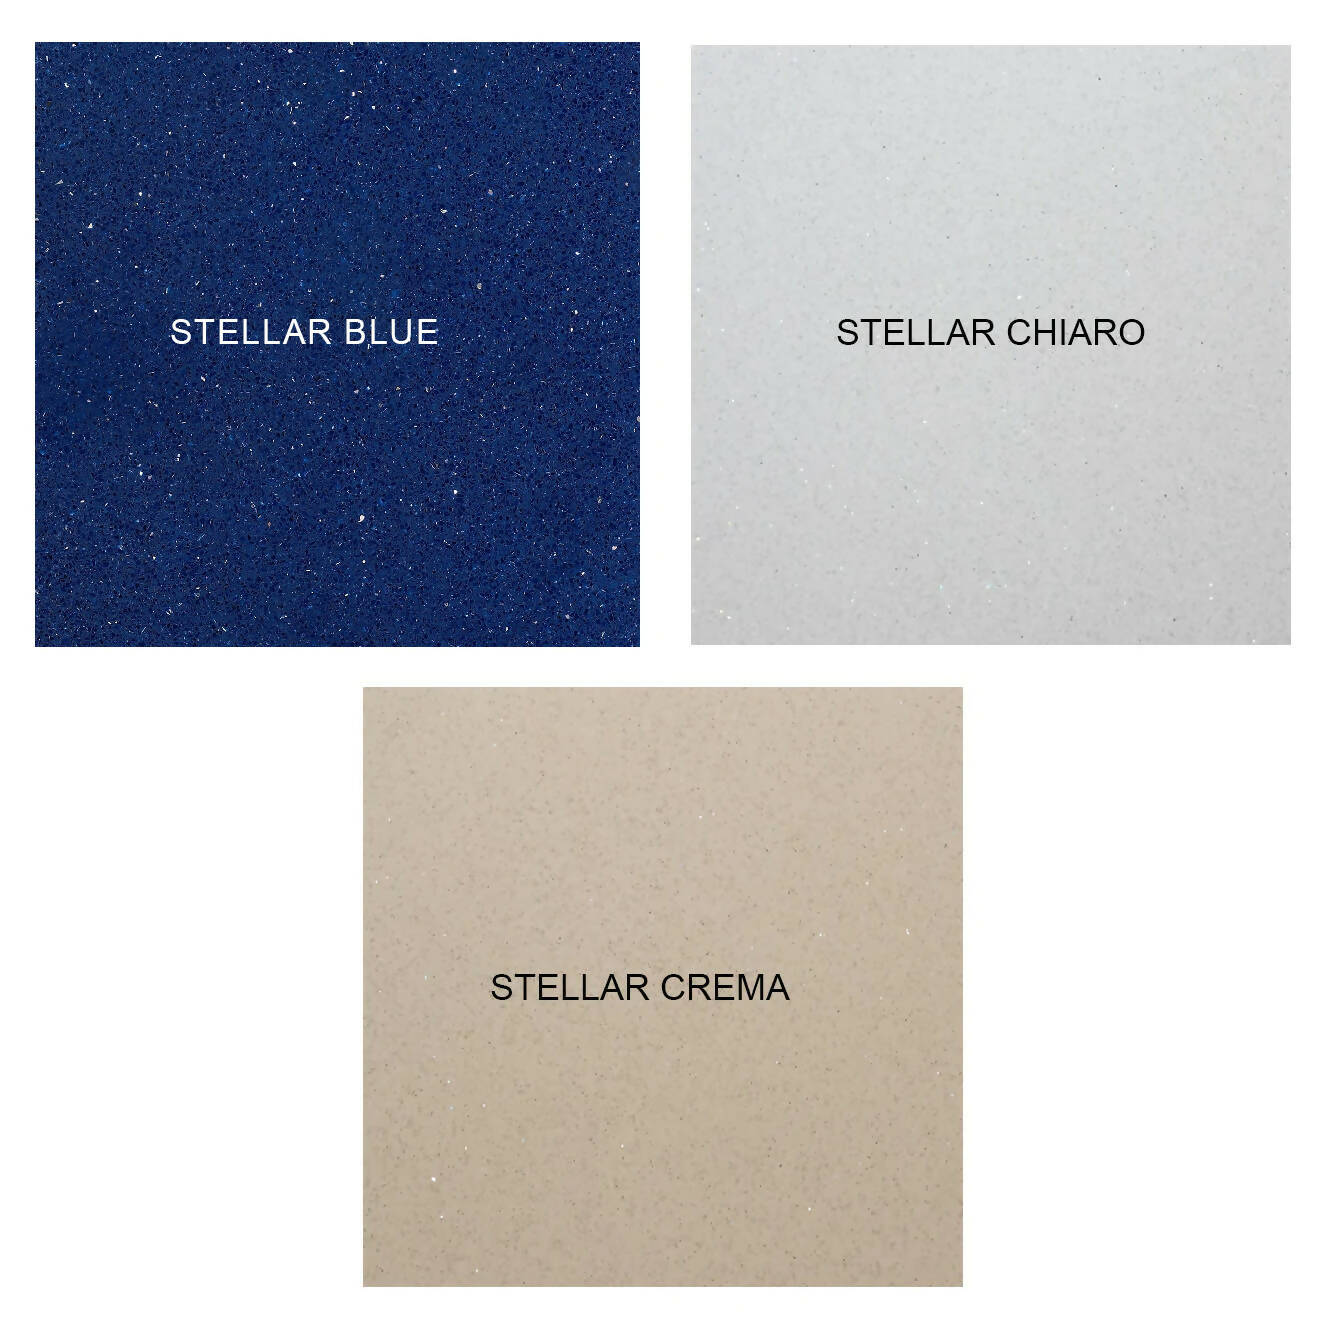 STELLAR BLUE QUARTZ,Quartz,Artemi,www.work-tops.com